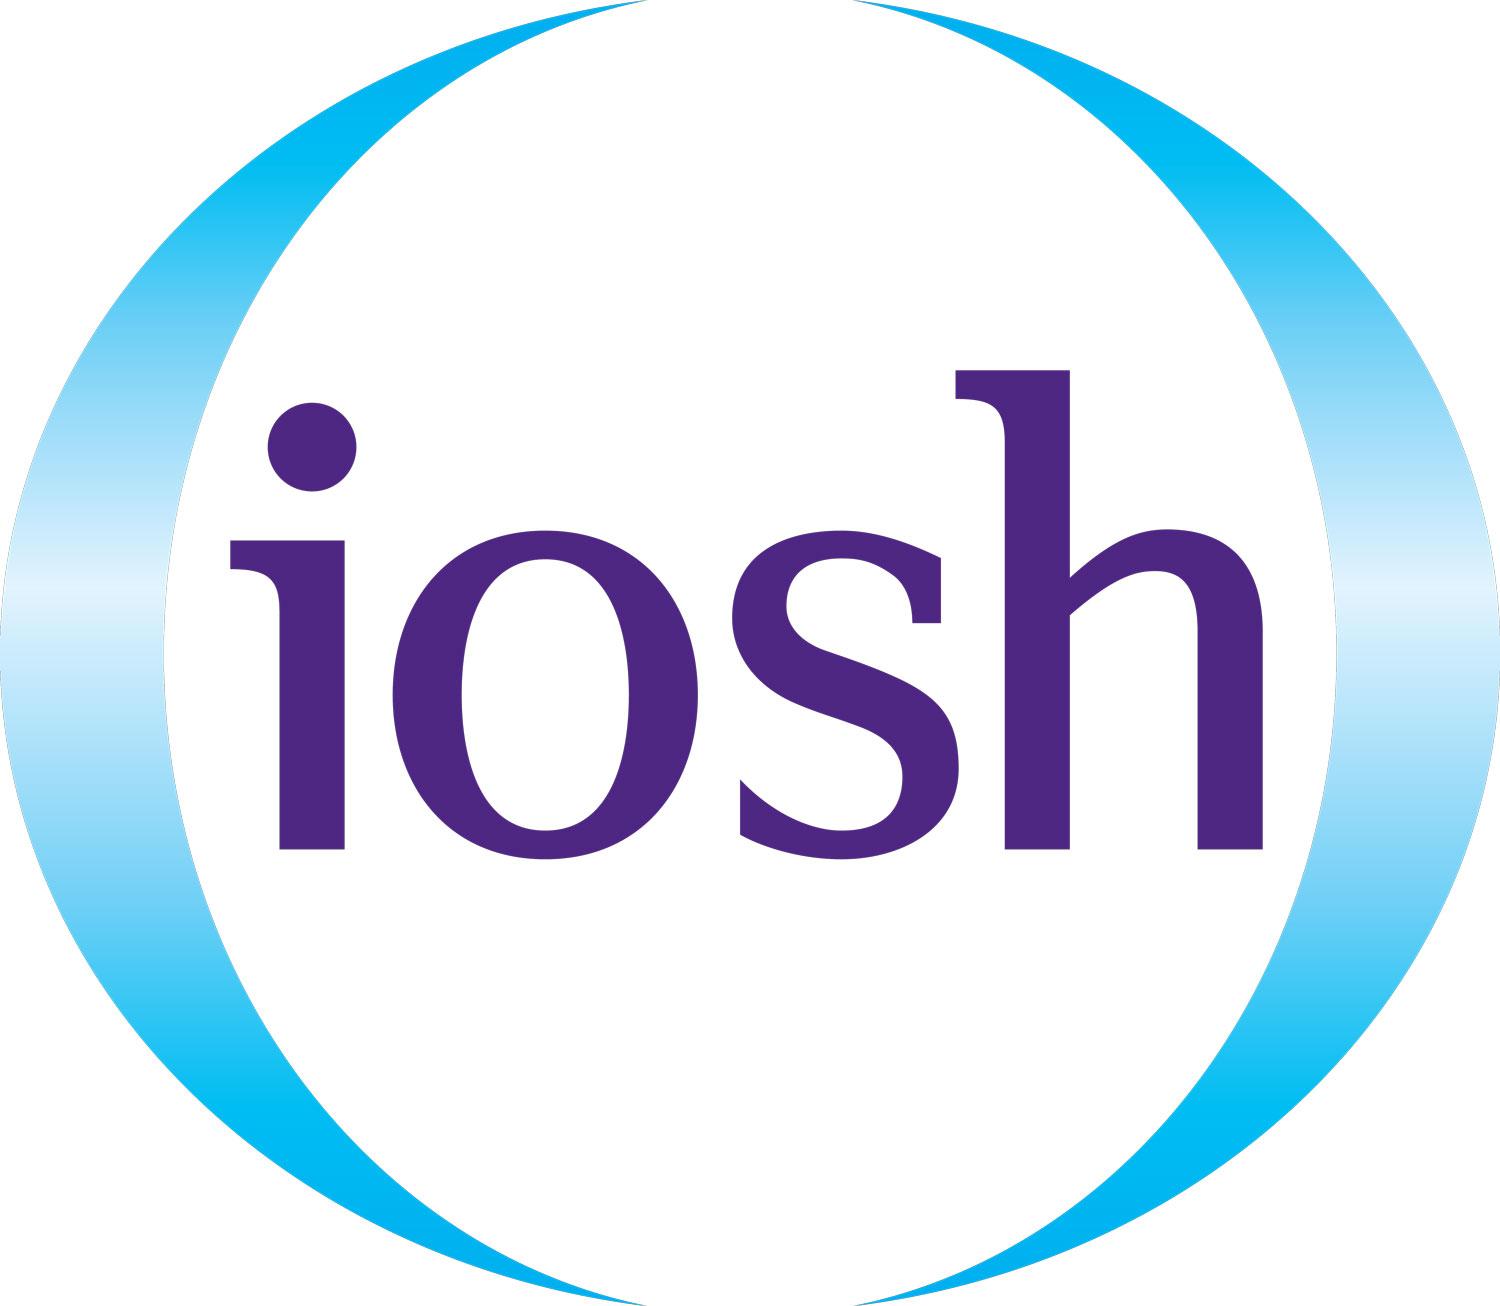 Это британская организация, предоставляющая обучение, поддержку и ресурсы в области охраны труда и безопасности. IOSH предлагает различные курсы и сертификации, направленные на повышение знаний и навыков специалистов, работающих в области охраны труда.